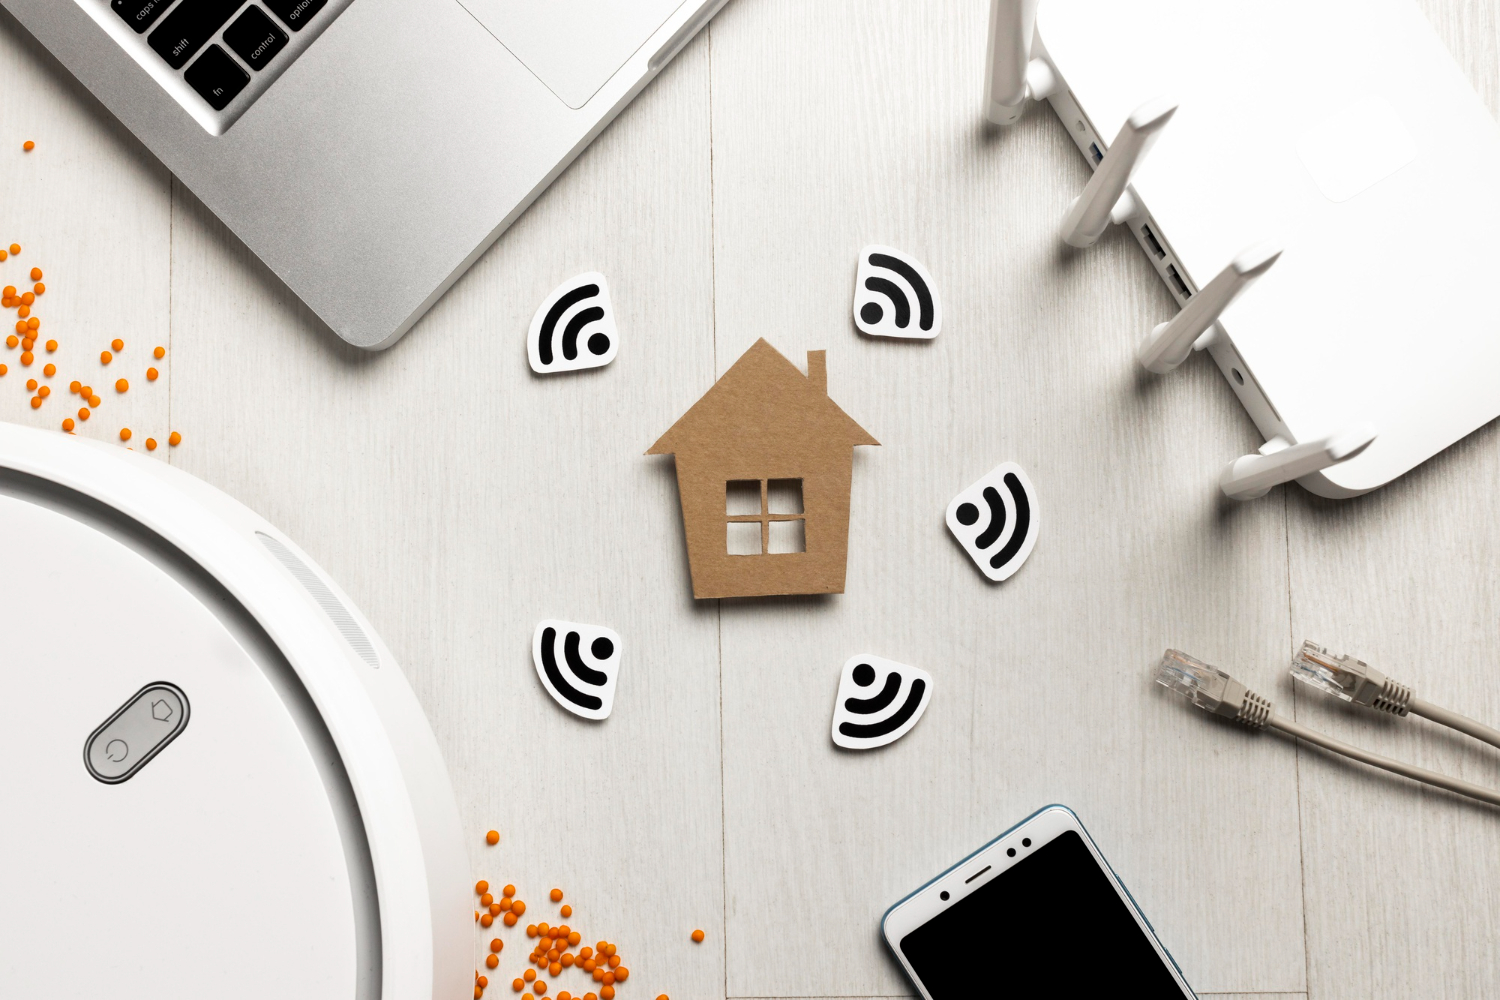 A localização do seu roteador Wi-Fi pode atrapalhar a conexão; Bit Magazine apresenta dicas para melhorar a internet